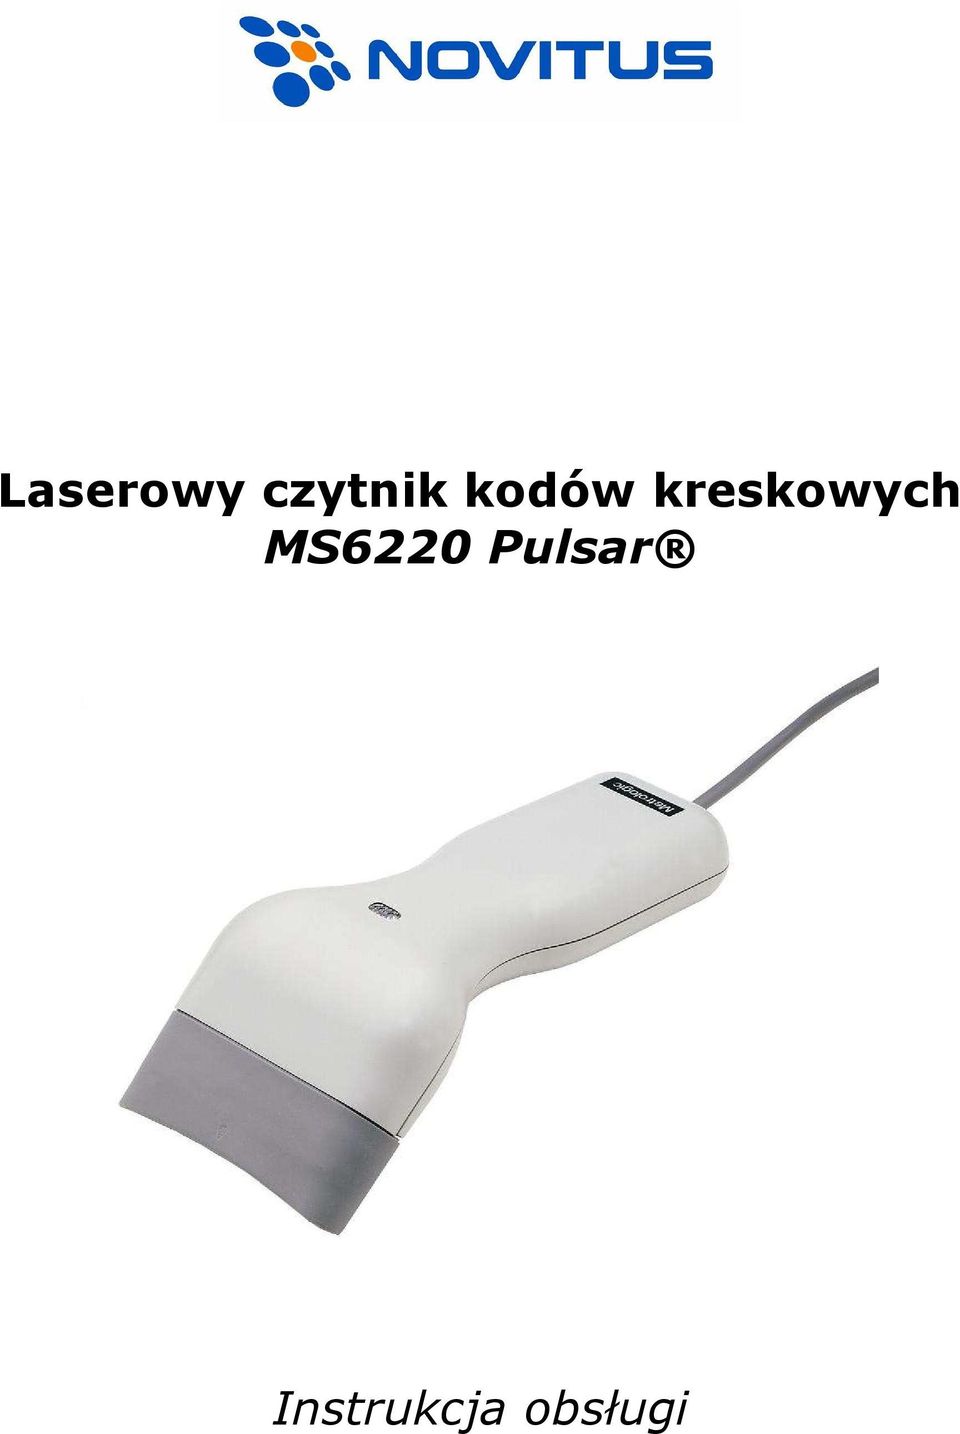 MS6220 Pulsar